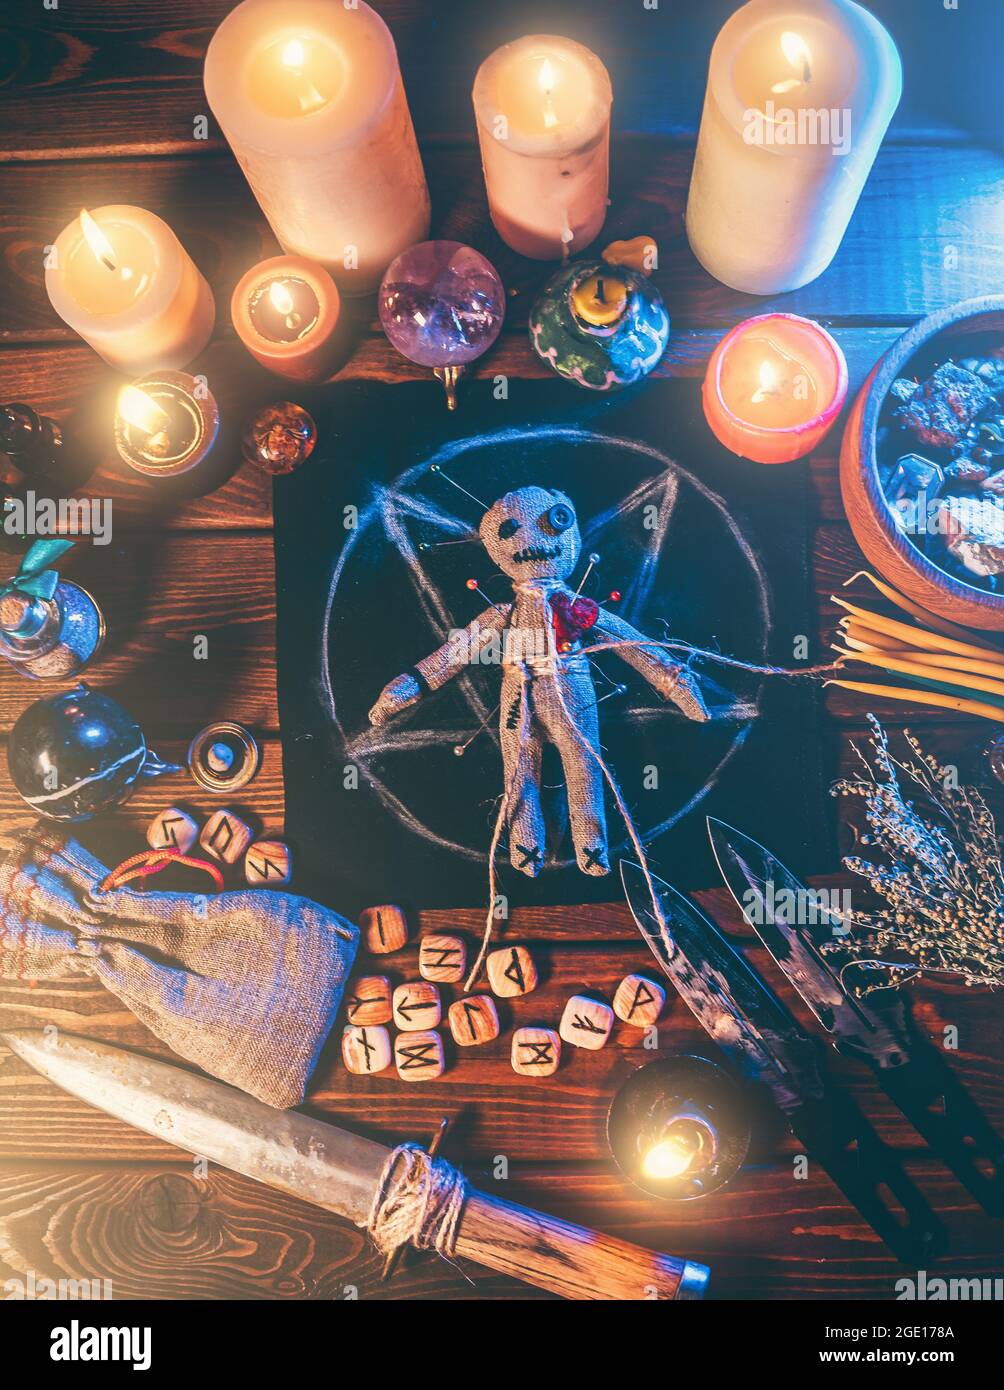 Voodoo bambola con aghi al centro del magico tavolo con candele e oggetti occulti vista dall'alto. Rituale magico e scuro. Retribution o vendetta attraverso il concetto di stregoneria. Foto Stock